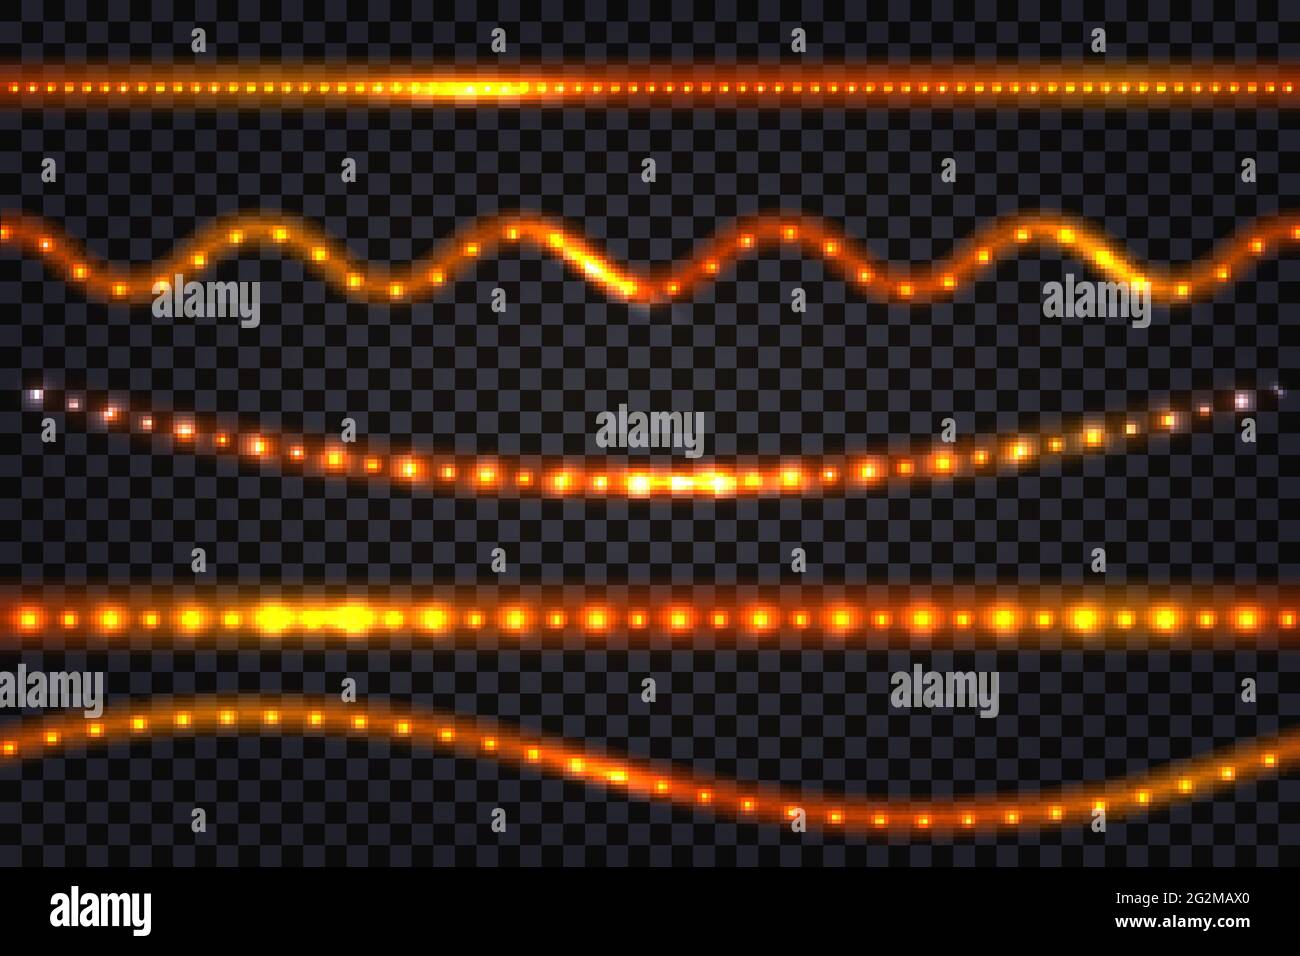 LED-Licht Girlanden mit Neon-Glow-Effekt, mit Glitzerlicht Satz von Linien beleuchtet Streifen und Wellen, isolierte Bänder auf transparentem Hintergrund. V Stock Vektor